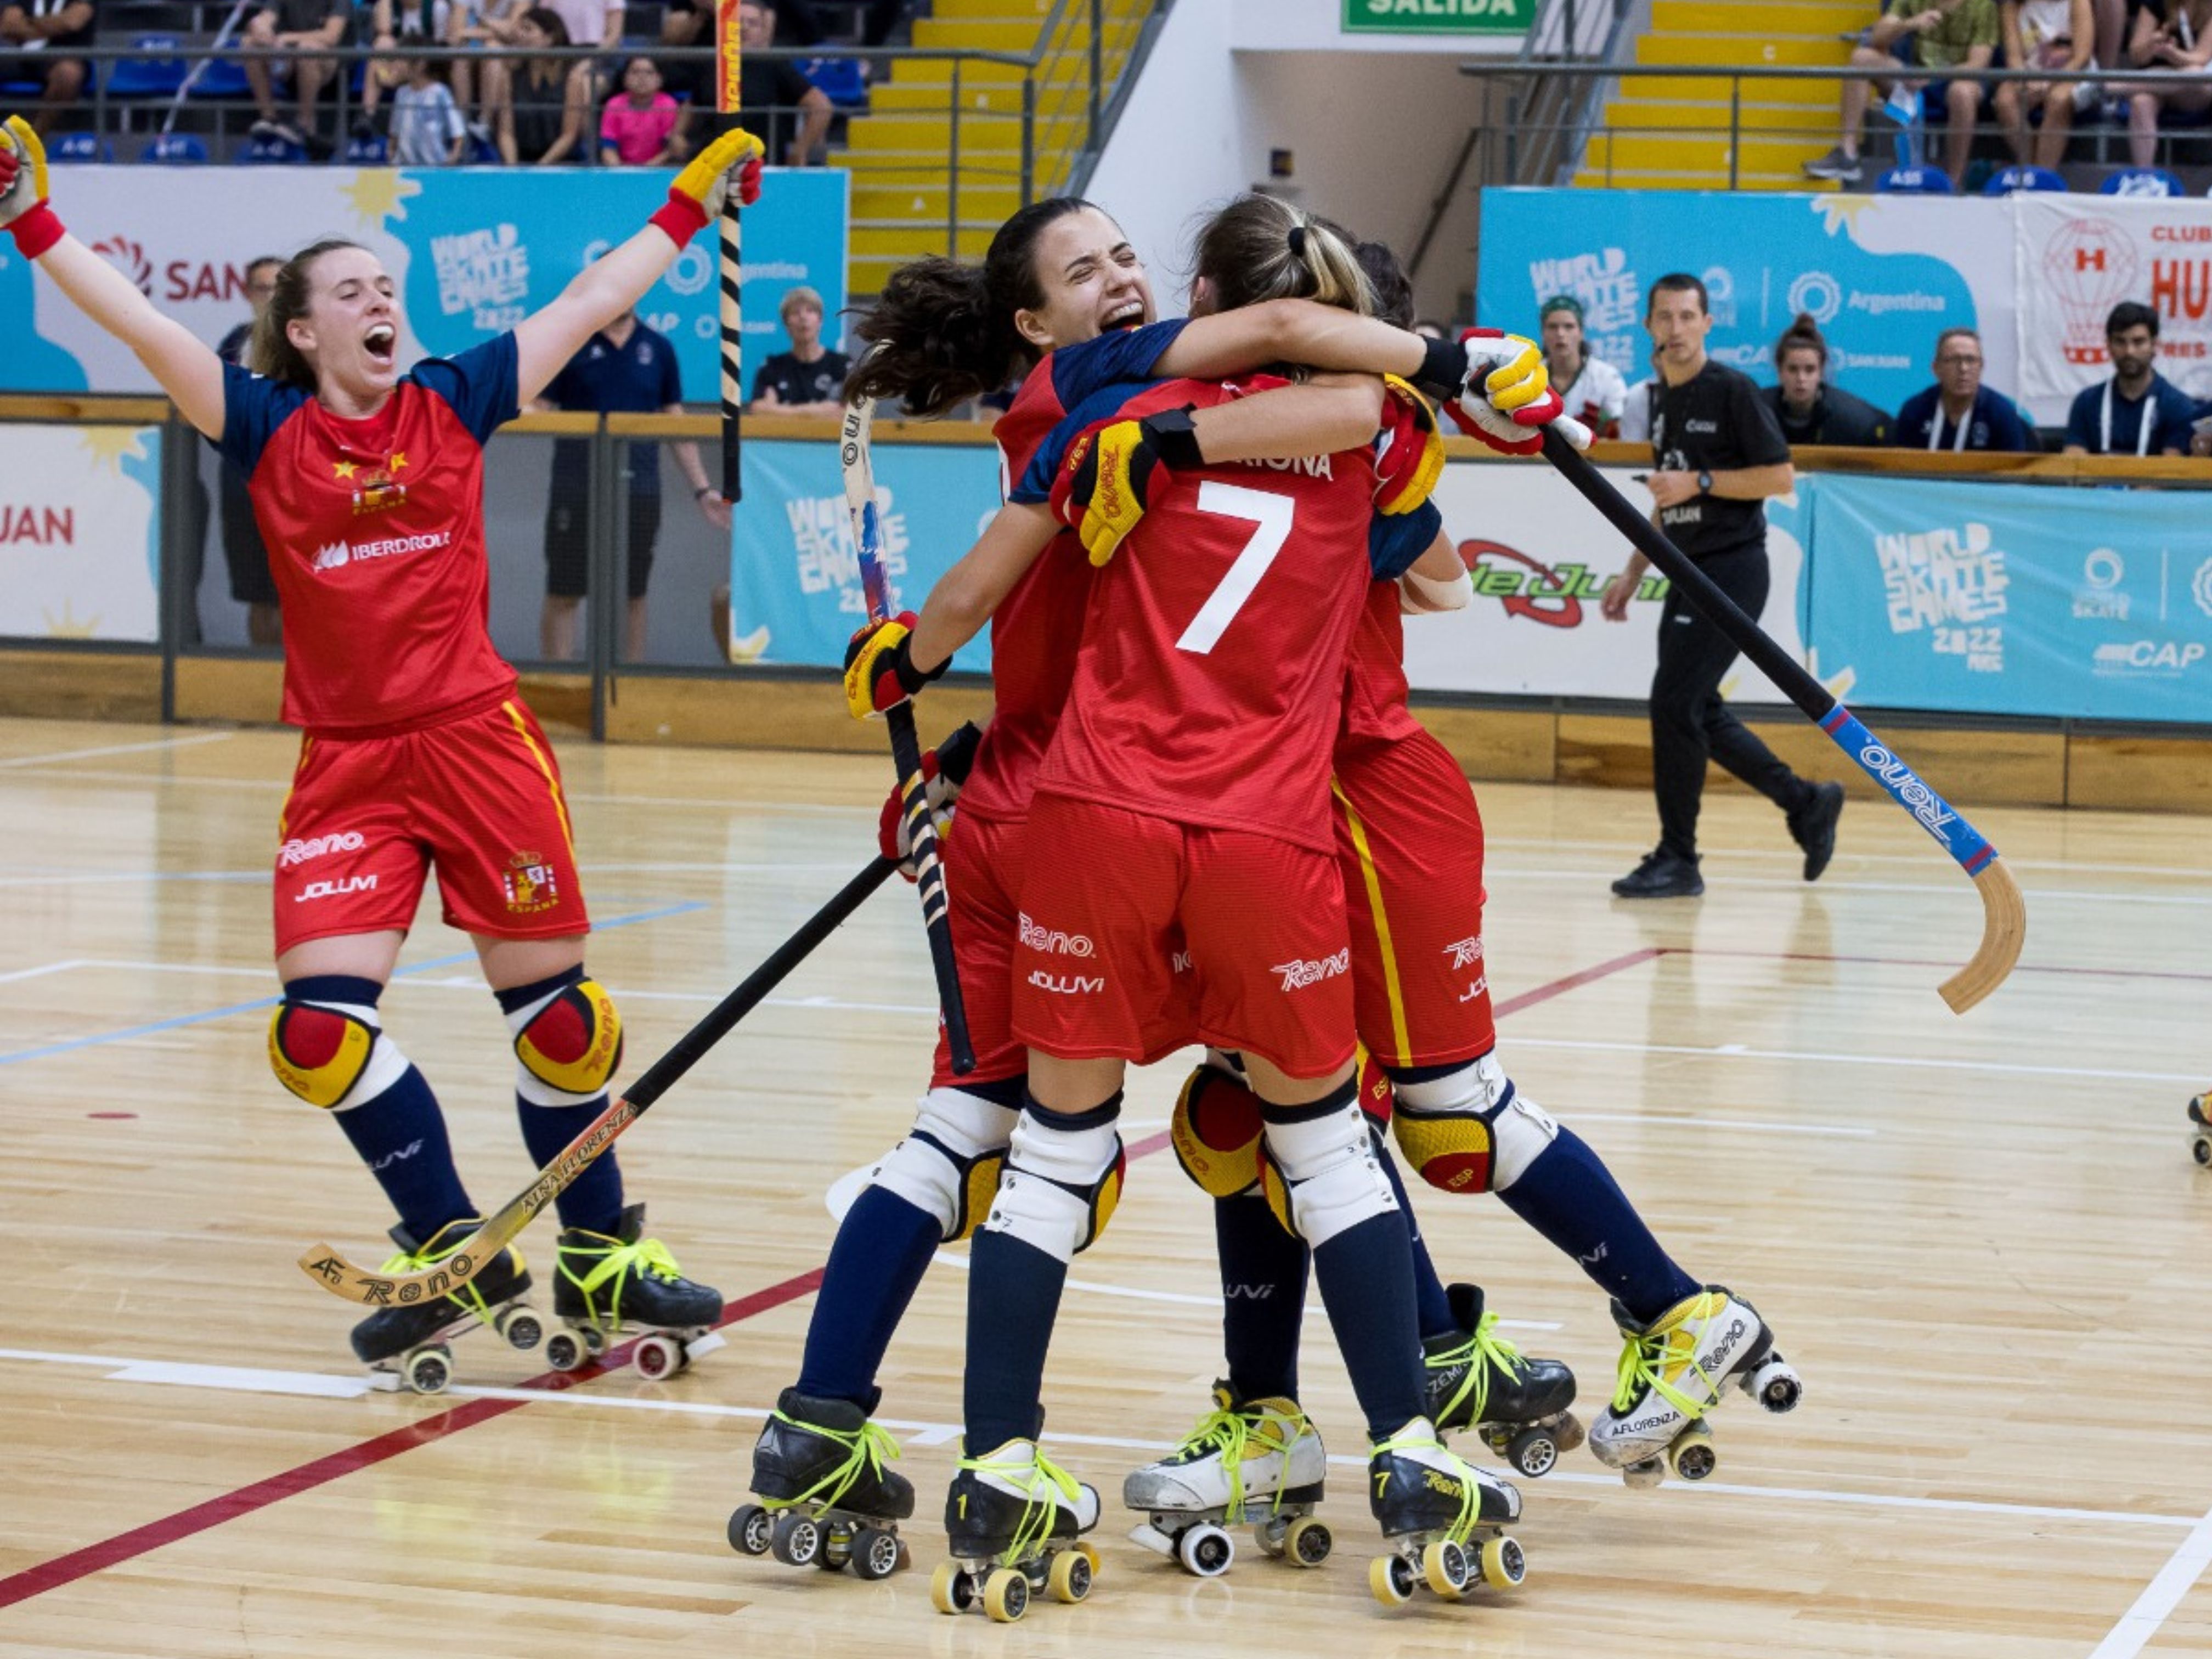 espectacular de la selección española femenina ante Portugal Patines